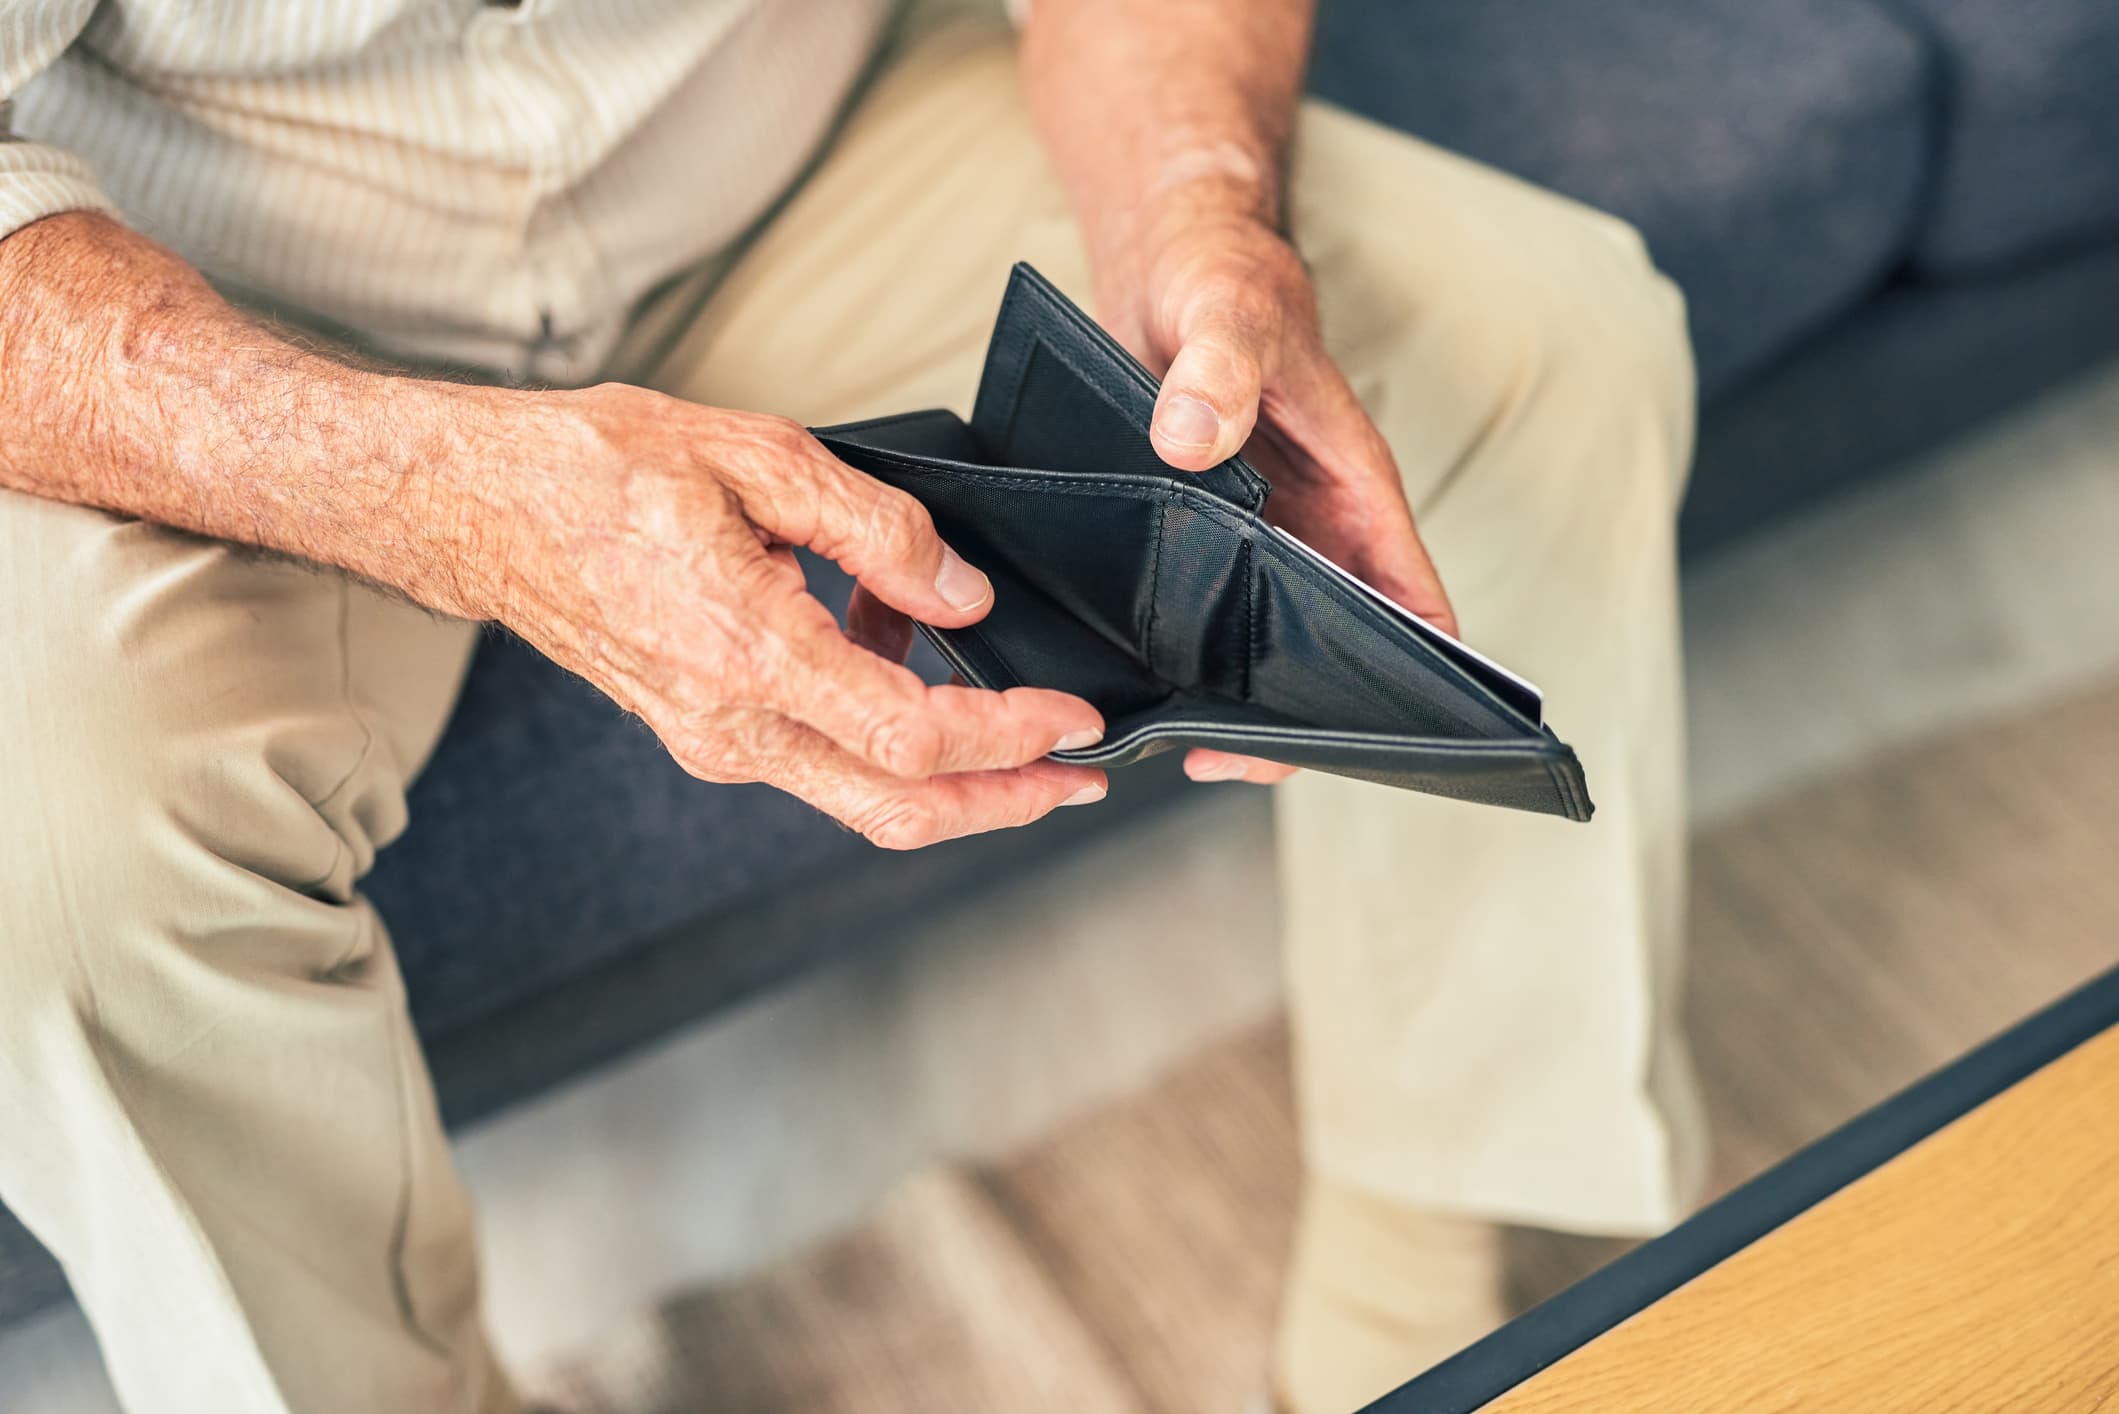 Државни програми „Ауто-ИРА“ имају за циљ да попуне јаз у пензијској штедњи